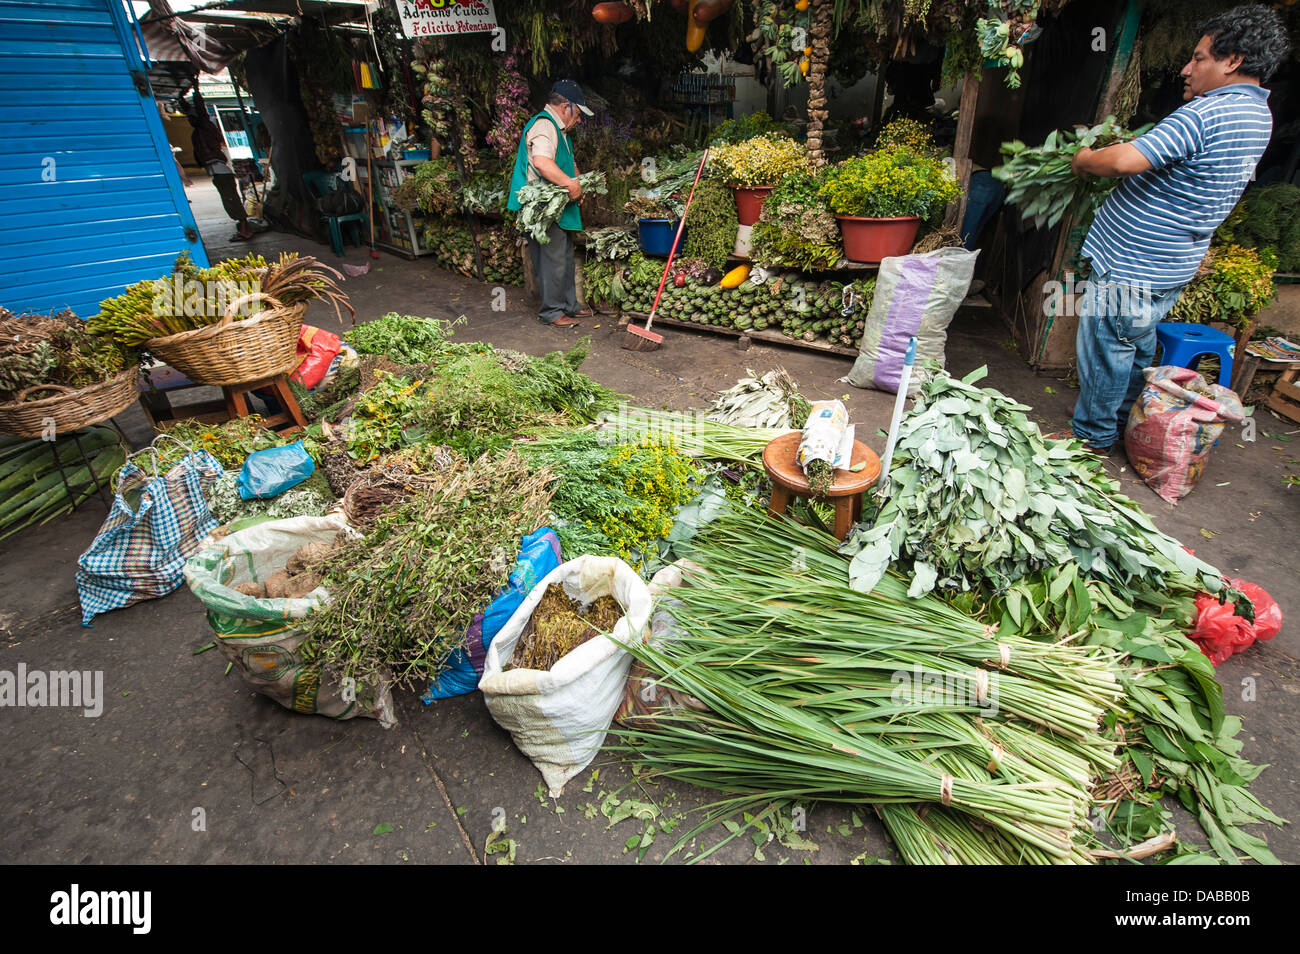 Frische Kräuter Gewürze Gemüse Gemüse Grüns stehen Stall Shop Einkaufen in lokalen Zentralmarkt Marktplatz in Chiclayo, Peru. Stockfoto